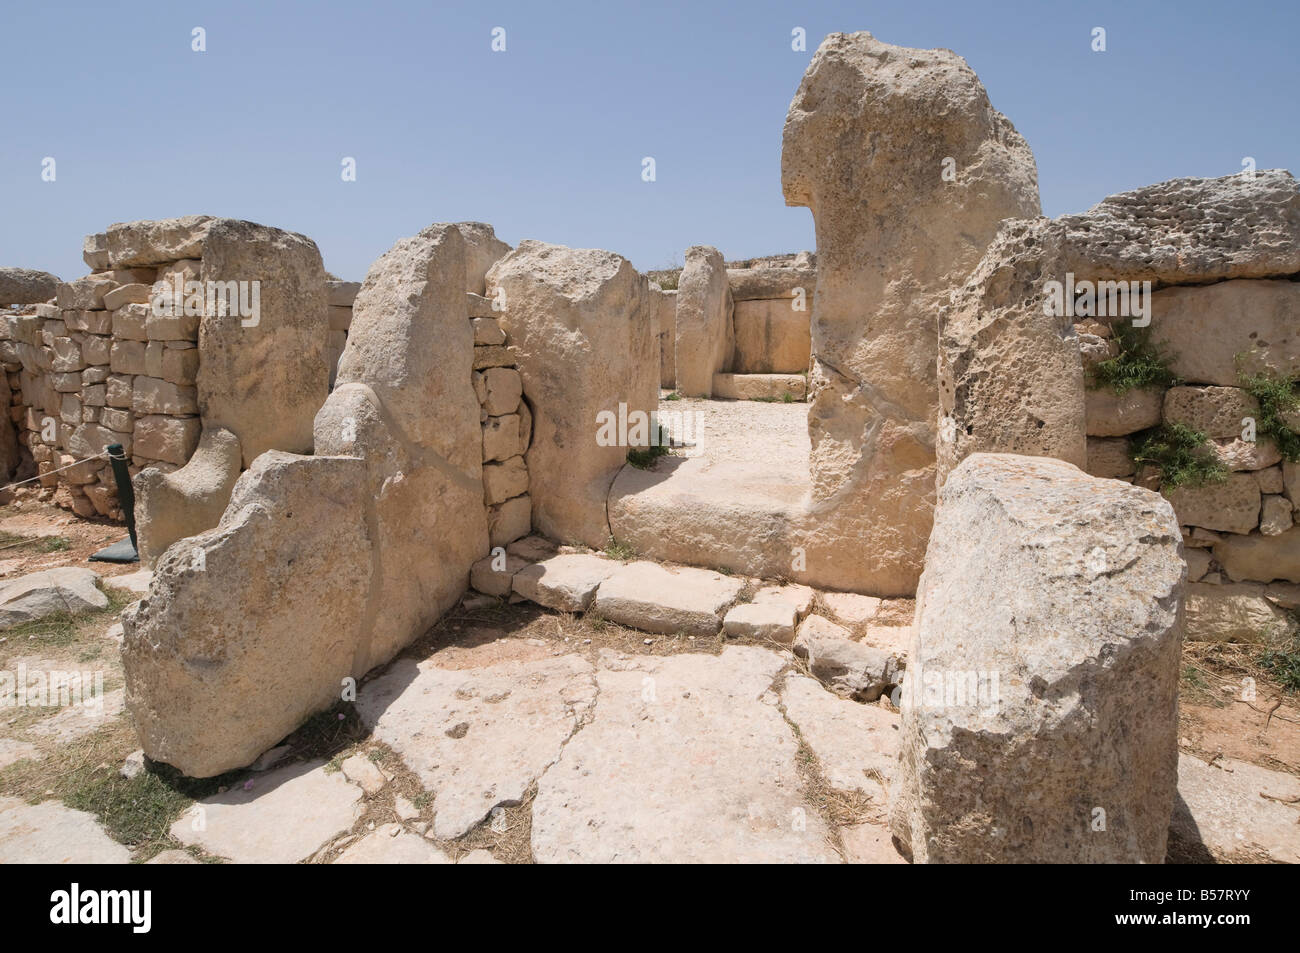 Un temple mégalithique de Mnajdra, construite à la fin du troisième millénaire avant J.-C., UNESCO World Heritage Site, Malta, Europe Banque D'Images